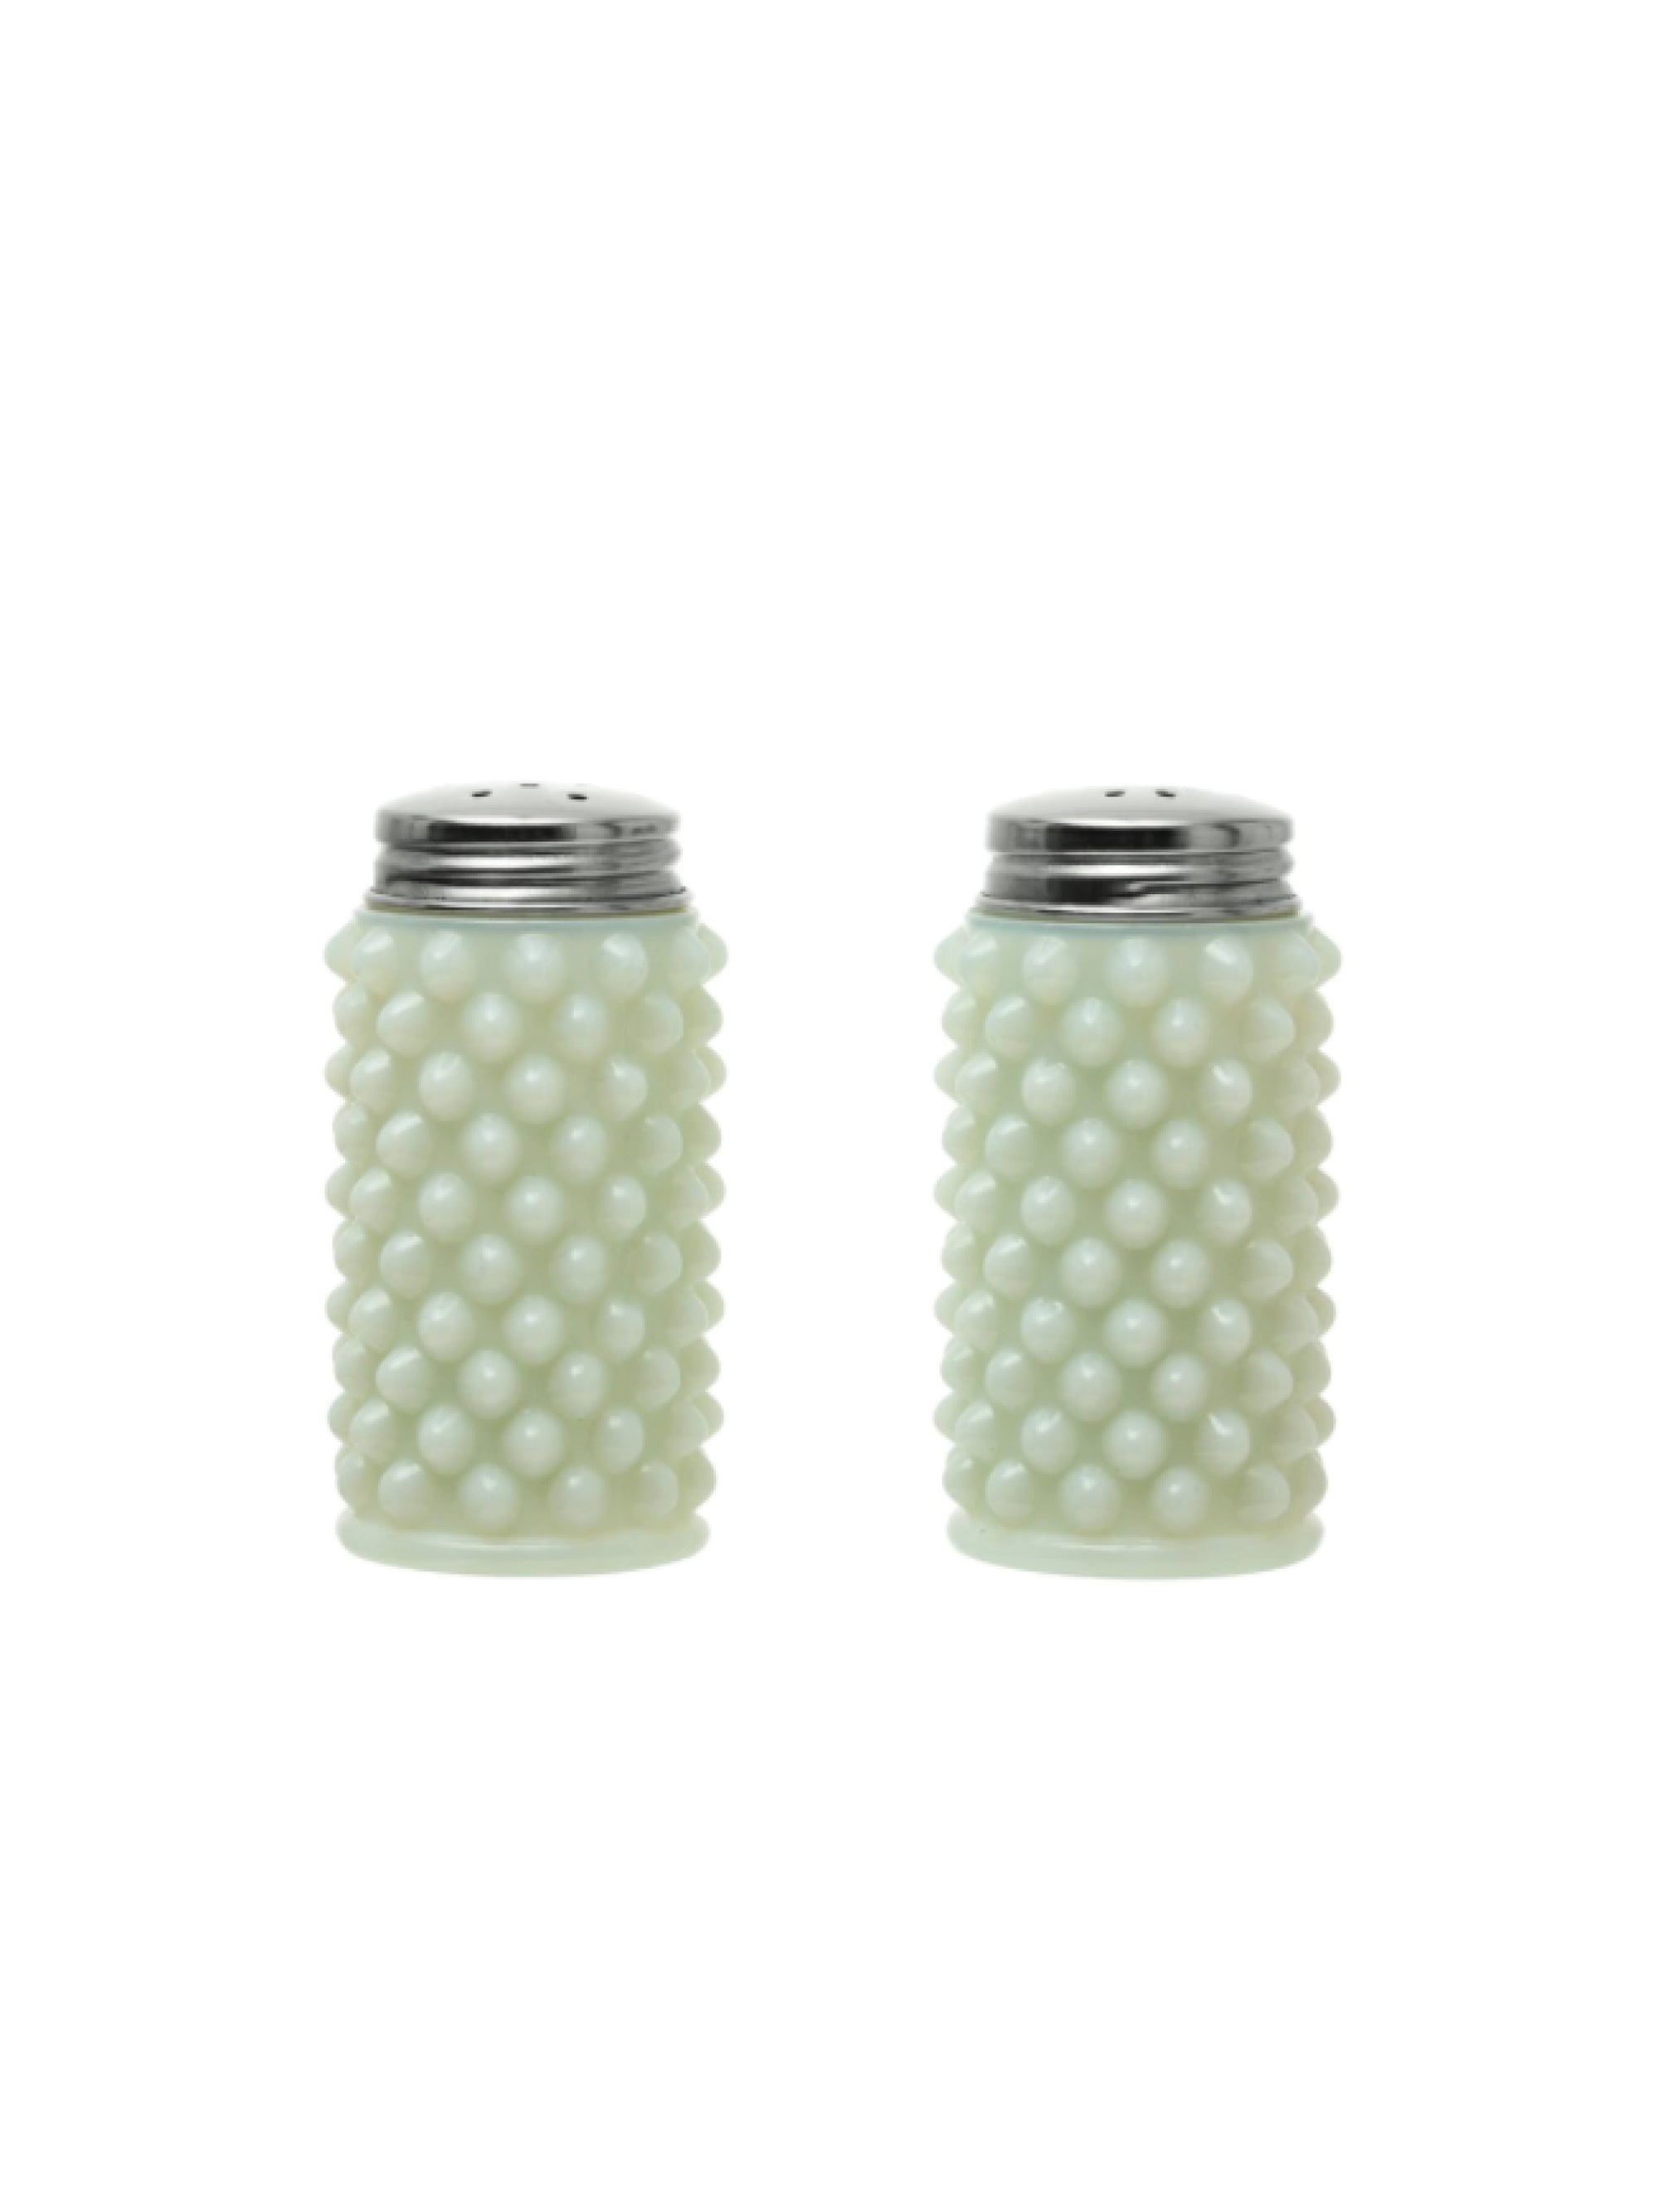 Milk Glass Hobnail Salt & Pepper Shakers